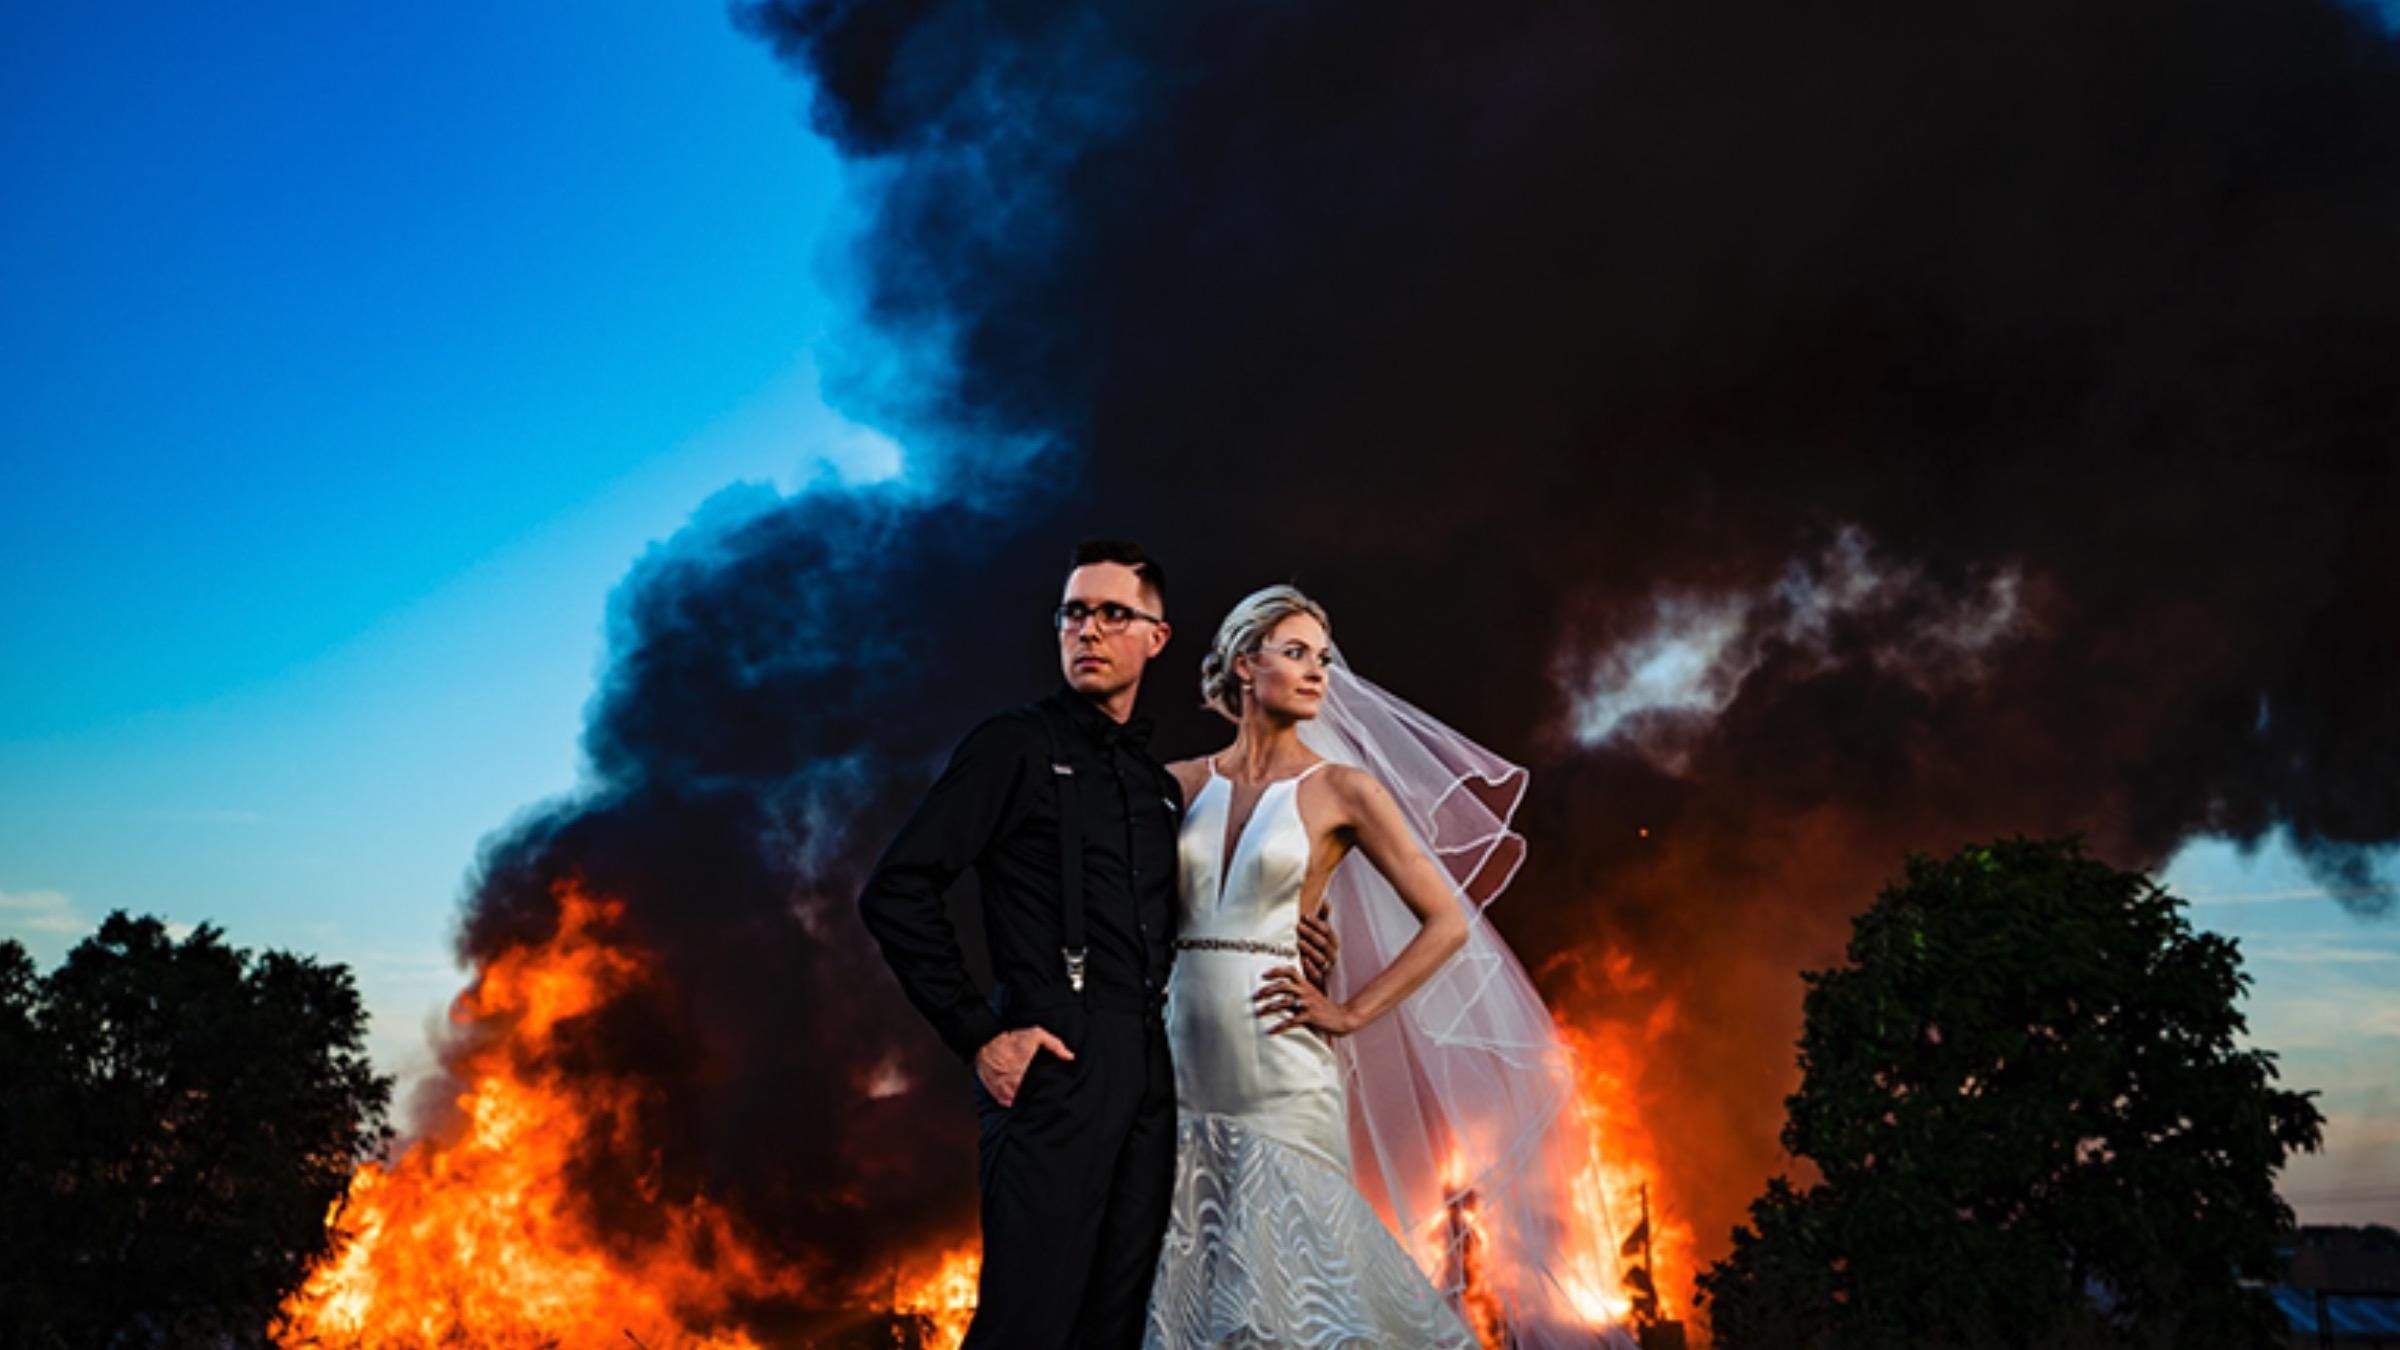 Свадебная фотосессия с пламенем: как пара внезапно сделала впечатляющие кадры на фоне пожара